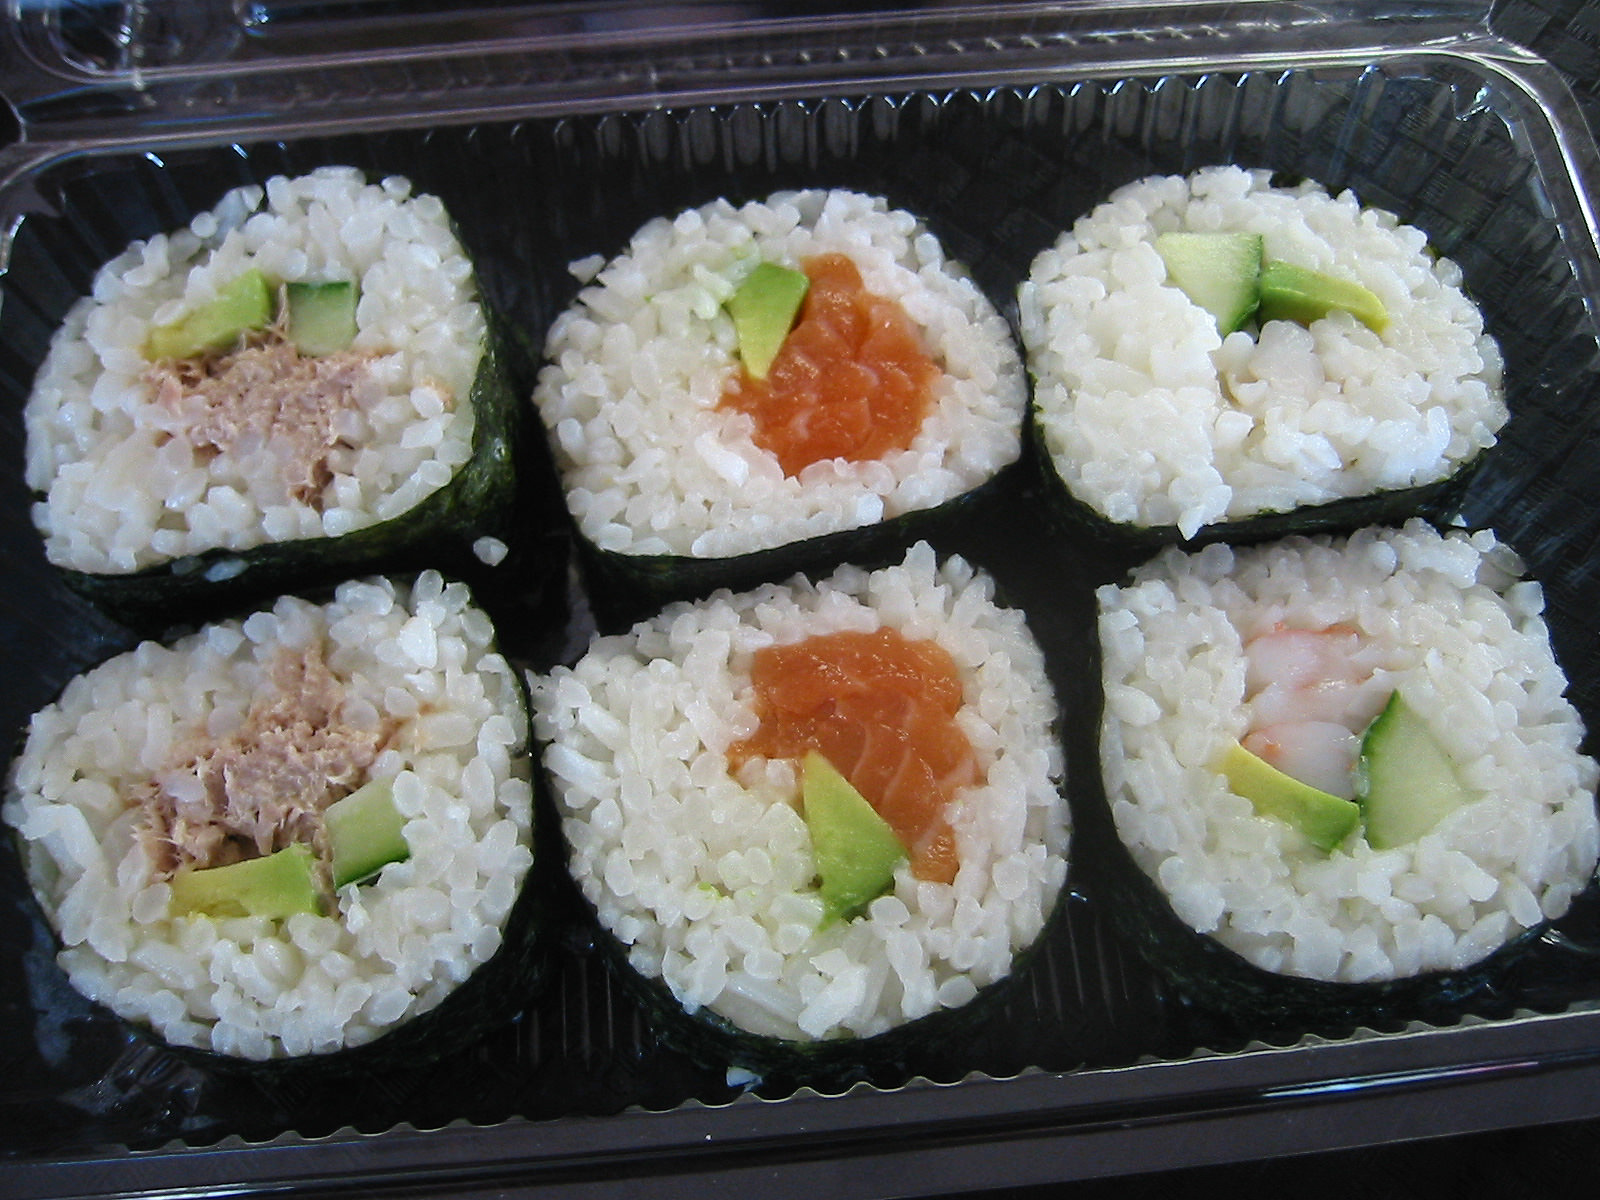 Mixed sushi